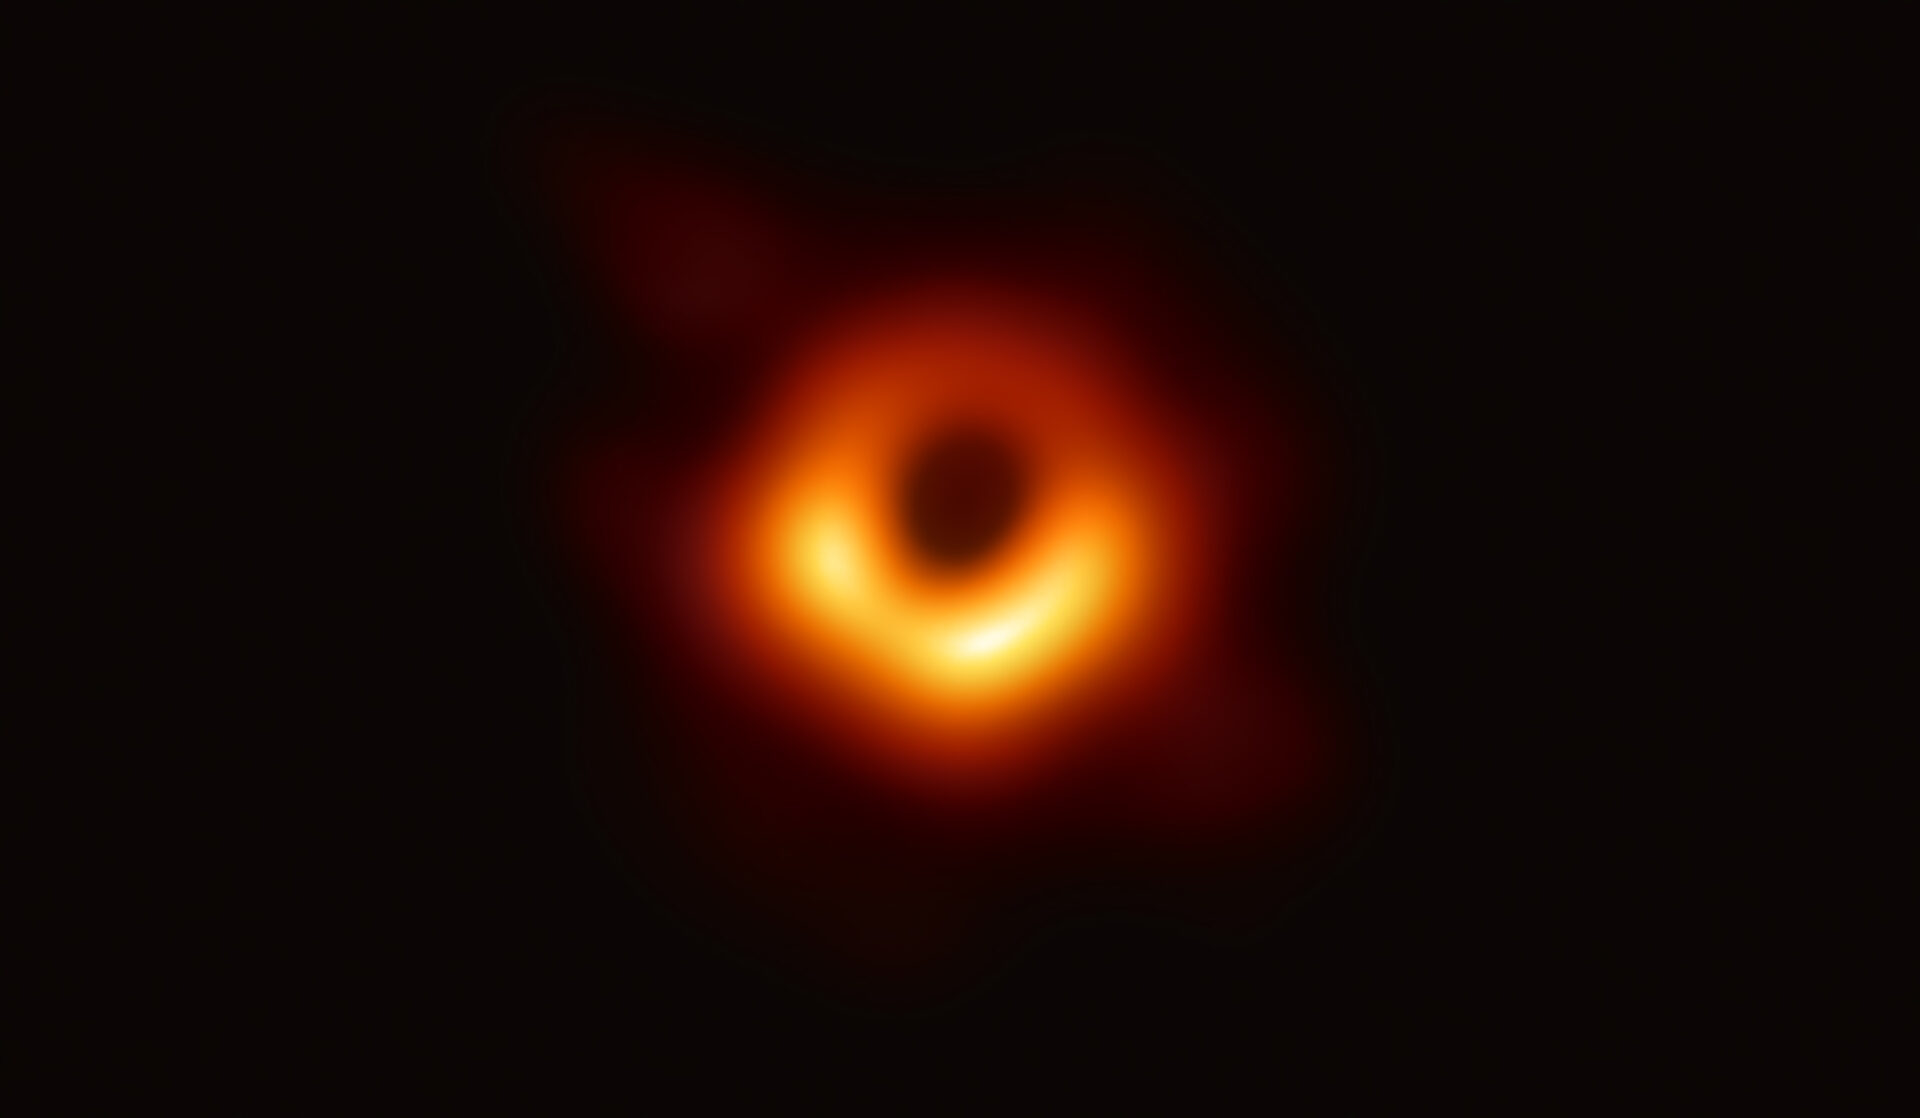 <p>El Event Horizon Telescope (EHT), un conjunto a escala planetaria de ocho radiotelescopios terrestres forjados a través de la colaboración internacional, fue diseñado para capturar imágenes de un agujero negro. En conferencias de prensa coordinadas en todo el mundo, los investigadores de EHT revelaron que tuvieron éxito, revelando la primera evidencia visual directa del agujero negro supermasivo en el centro de Messier 87 y su sombra.<br />
La sombra de un agujero negro que se ve aquí es lo más cerca que podemos llegar a la imagen misma del agujero negro, un objeto completamente oscuro del cual la luz no puede escapar. El límite del agujero negro, el horizonte de eventos desde el cual el EHT toma su nombre, es aproximadamente 2,5 veces más pequeño que la sombra que proyecta y mide casi 40 mil millones de kilómetros de ancho. Si bien esto puede sonar grande, este anillo tiene solo unos 40 microarcsegundos, lo que equivale a medir la longitud de una tarjeta de crédito en la superficie de la Luna.<br />
Aunque los telescopios que forman el EHT no están conectados físicamente, son capaces de sincronizar los datos que registran con relojes atómicos, los máser de hidrógeno, que sincronizan sus observaciones de forma precisa. Estas observaciones se recopilaron en longitudes de onda de 1,3 mm durante una campaña global de 2017. Cada telescopio del EHT produjo enormes cantidades de datos, aproximadamente 350 terabytes por día, que se enviaron a supercomputadores altamente especializados, conocidos como correlacionadores, en el Instituto Max Planck de Radioastronomía y en el Observatorio Haystack MIT para su combinación. Luego se convirtieron meticulosamente en una imagen utilizando innovadoras herramientas computacionales desarrolladas por la colaboración.<br />
Crédito: Colaboración EHT</p>
